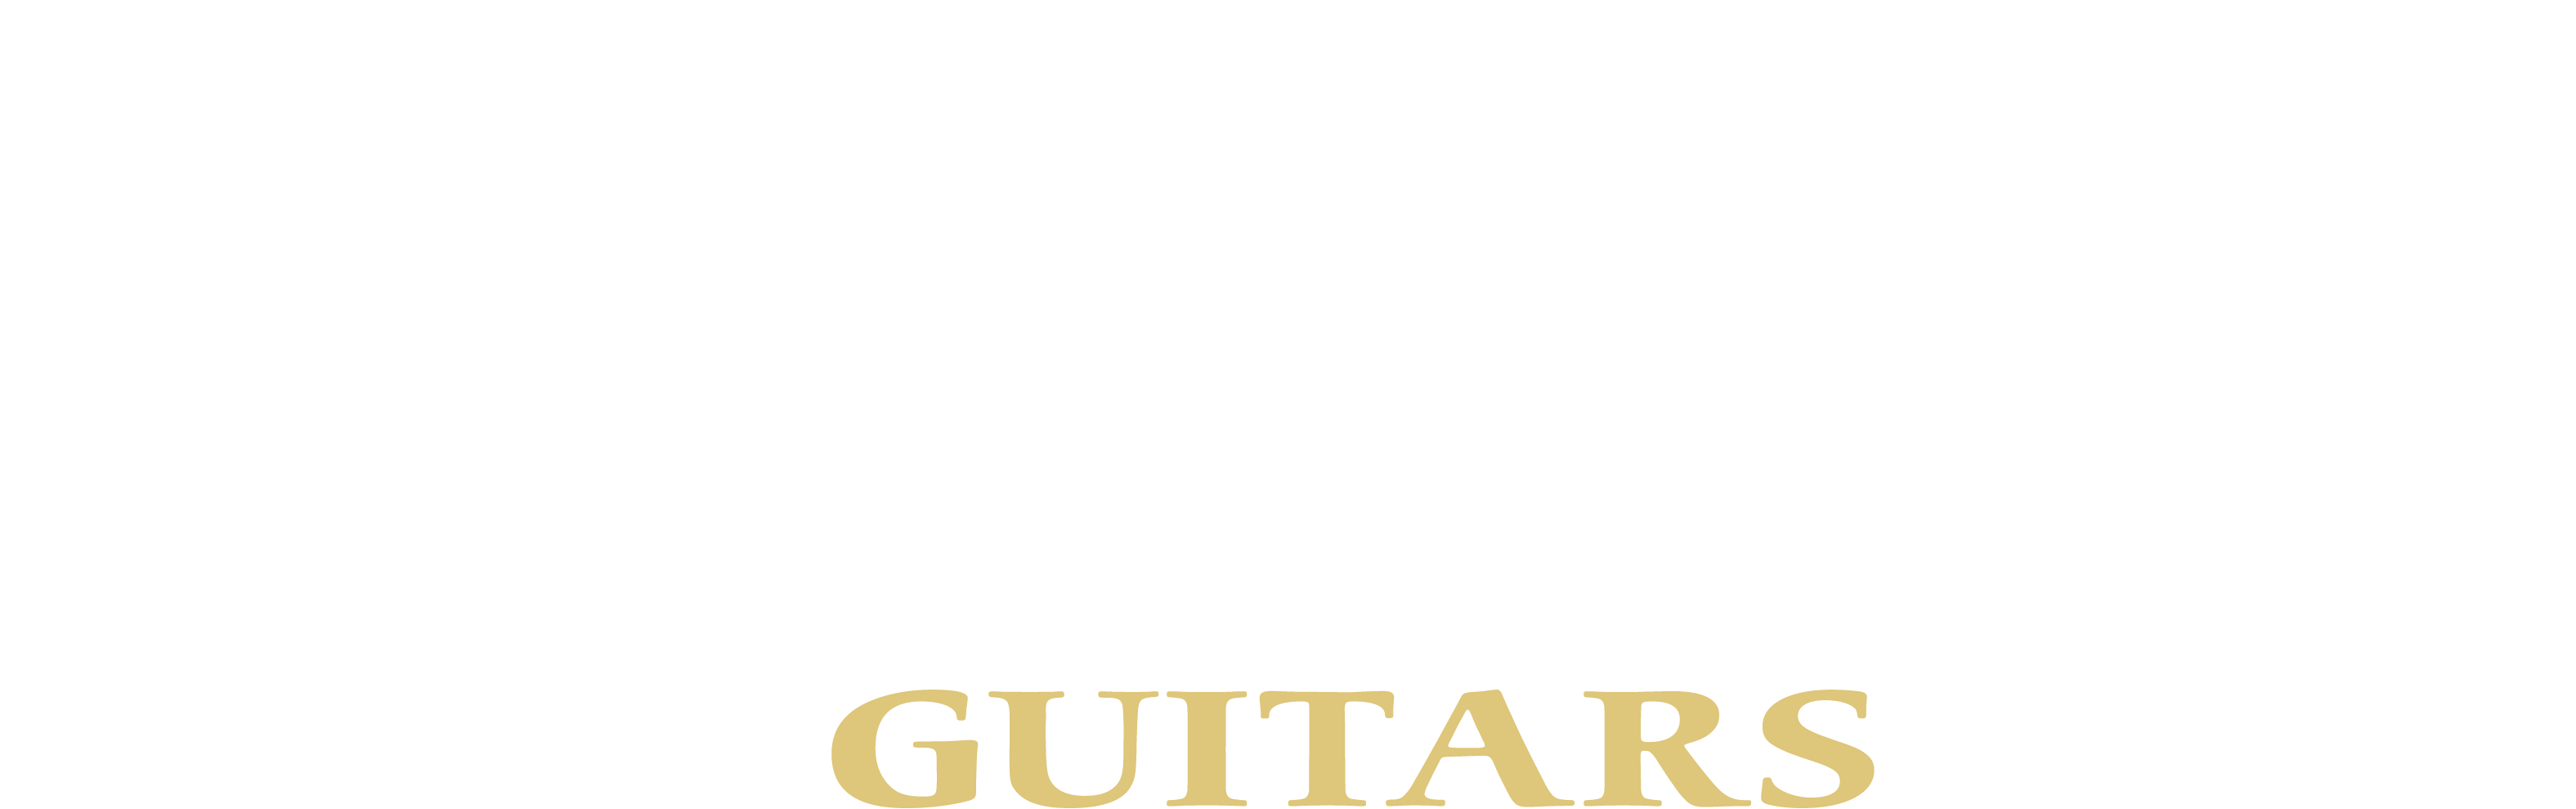 Guitare Boucher